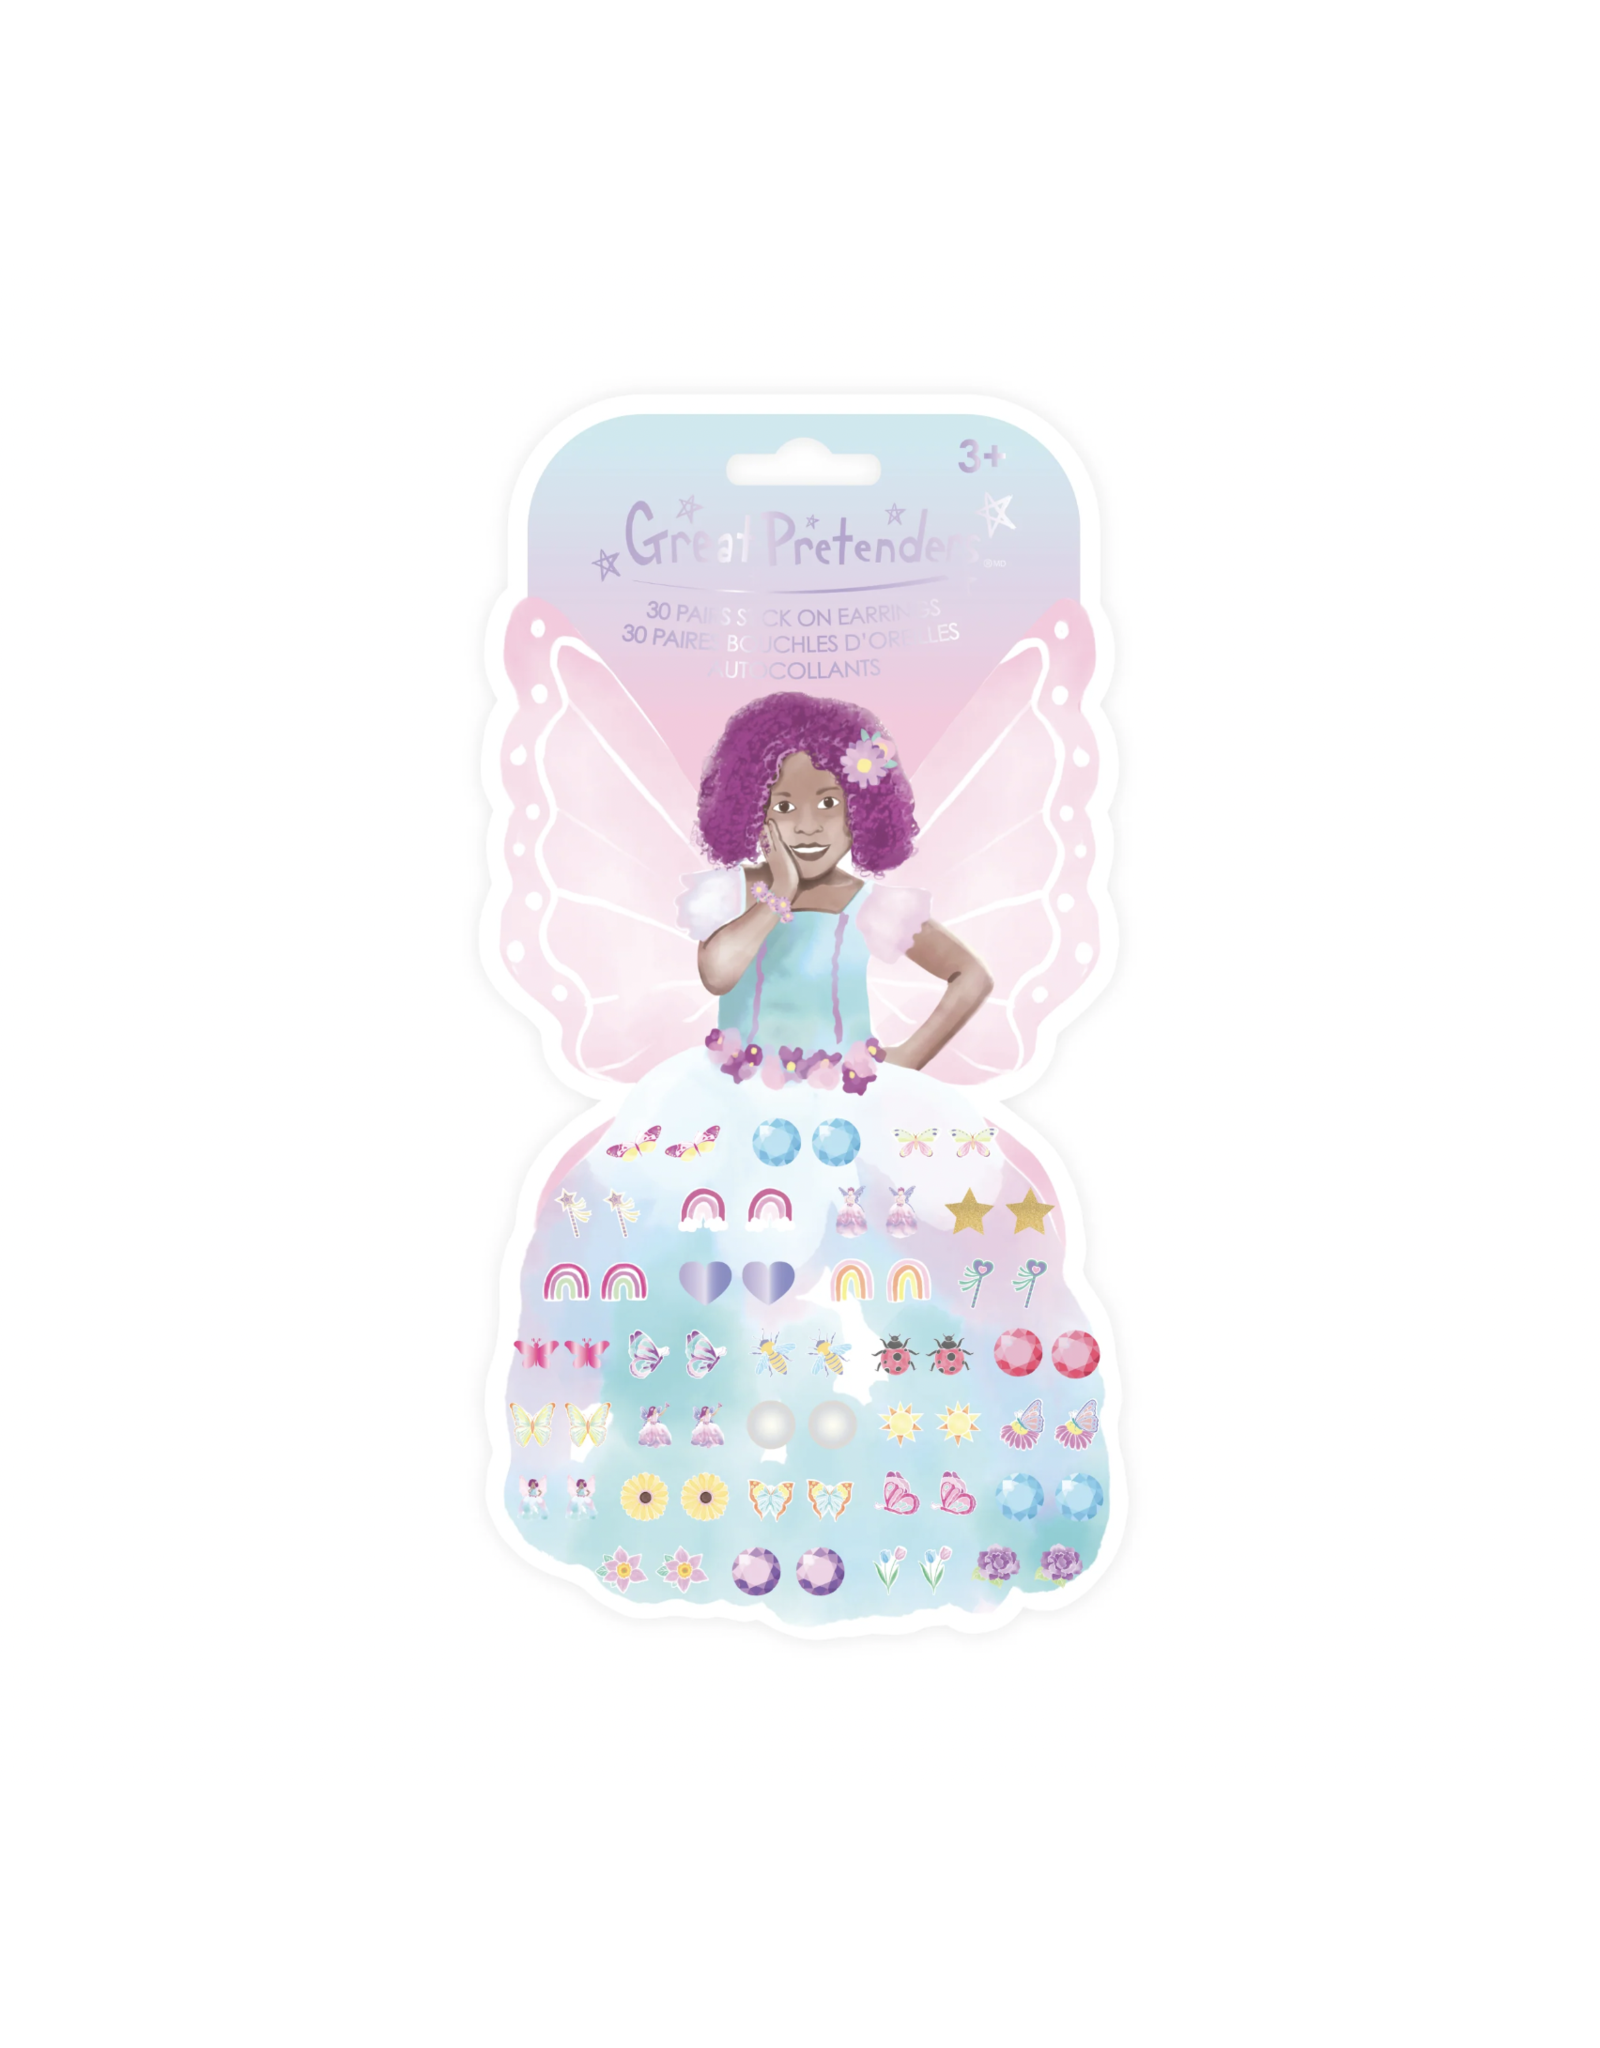 Great Pretenders Butterfly Fairy Azaria Sticker Earrings